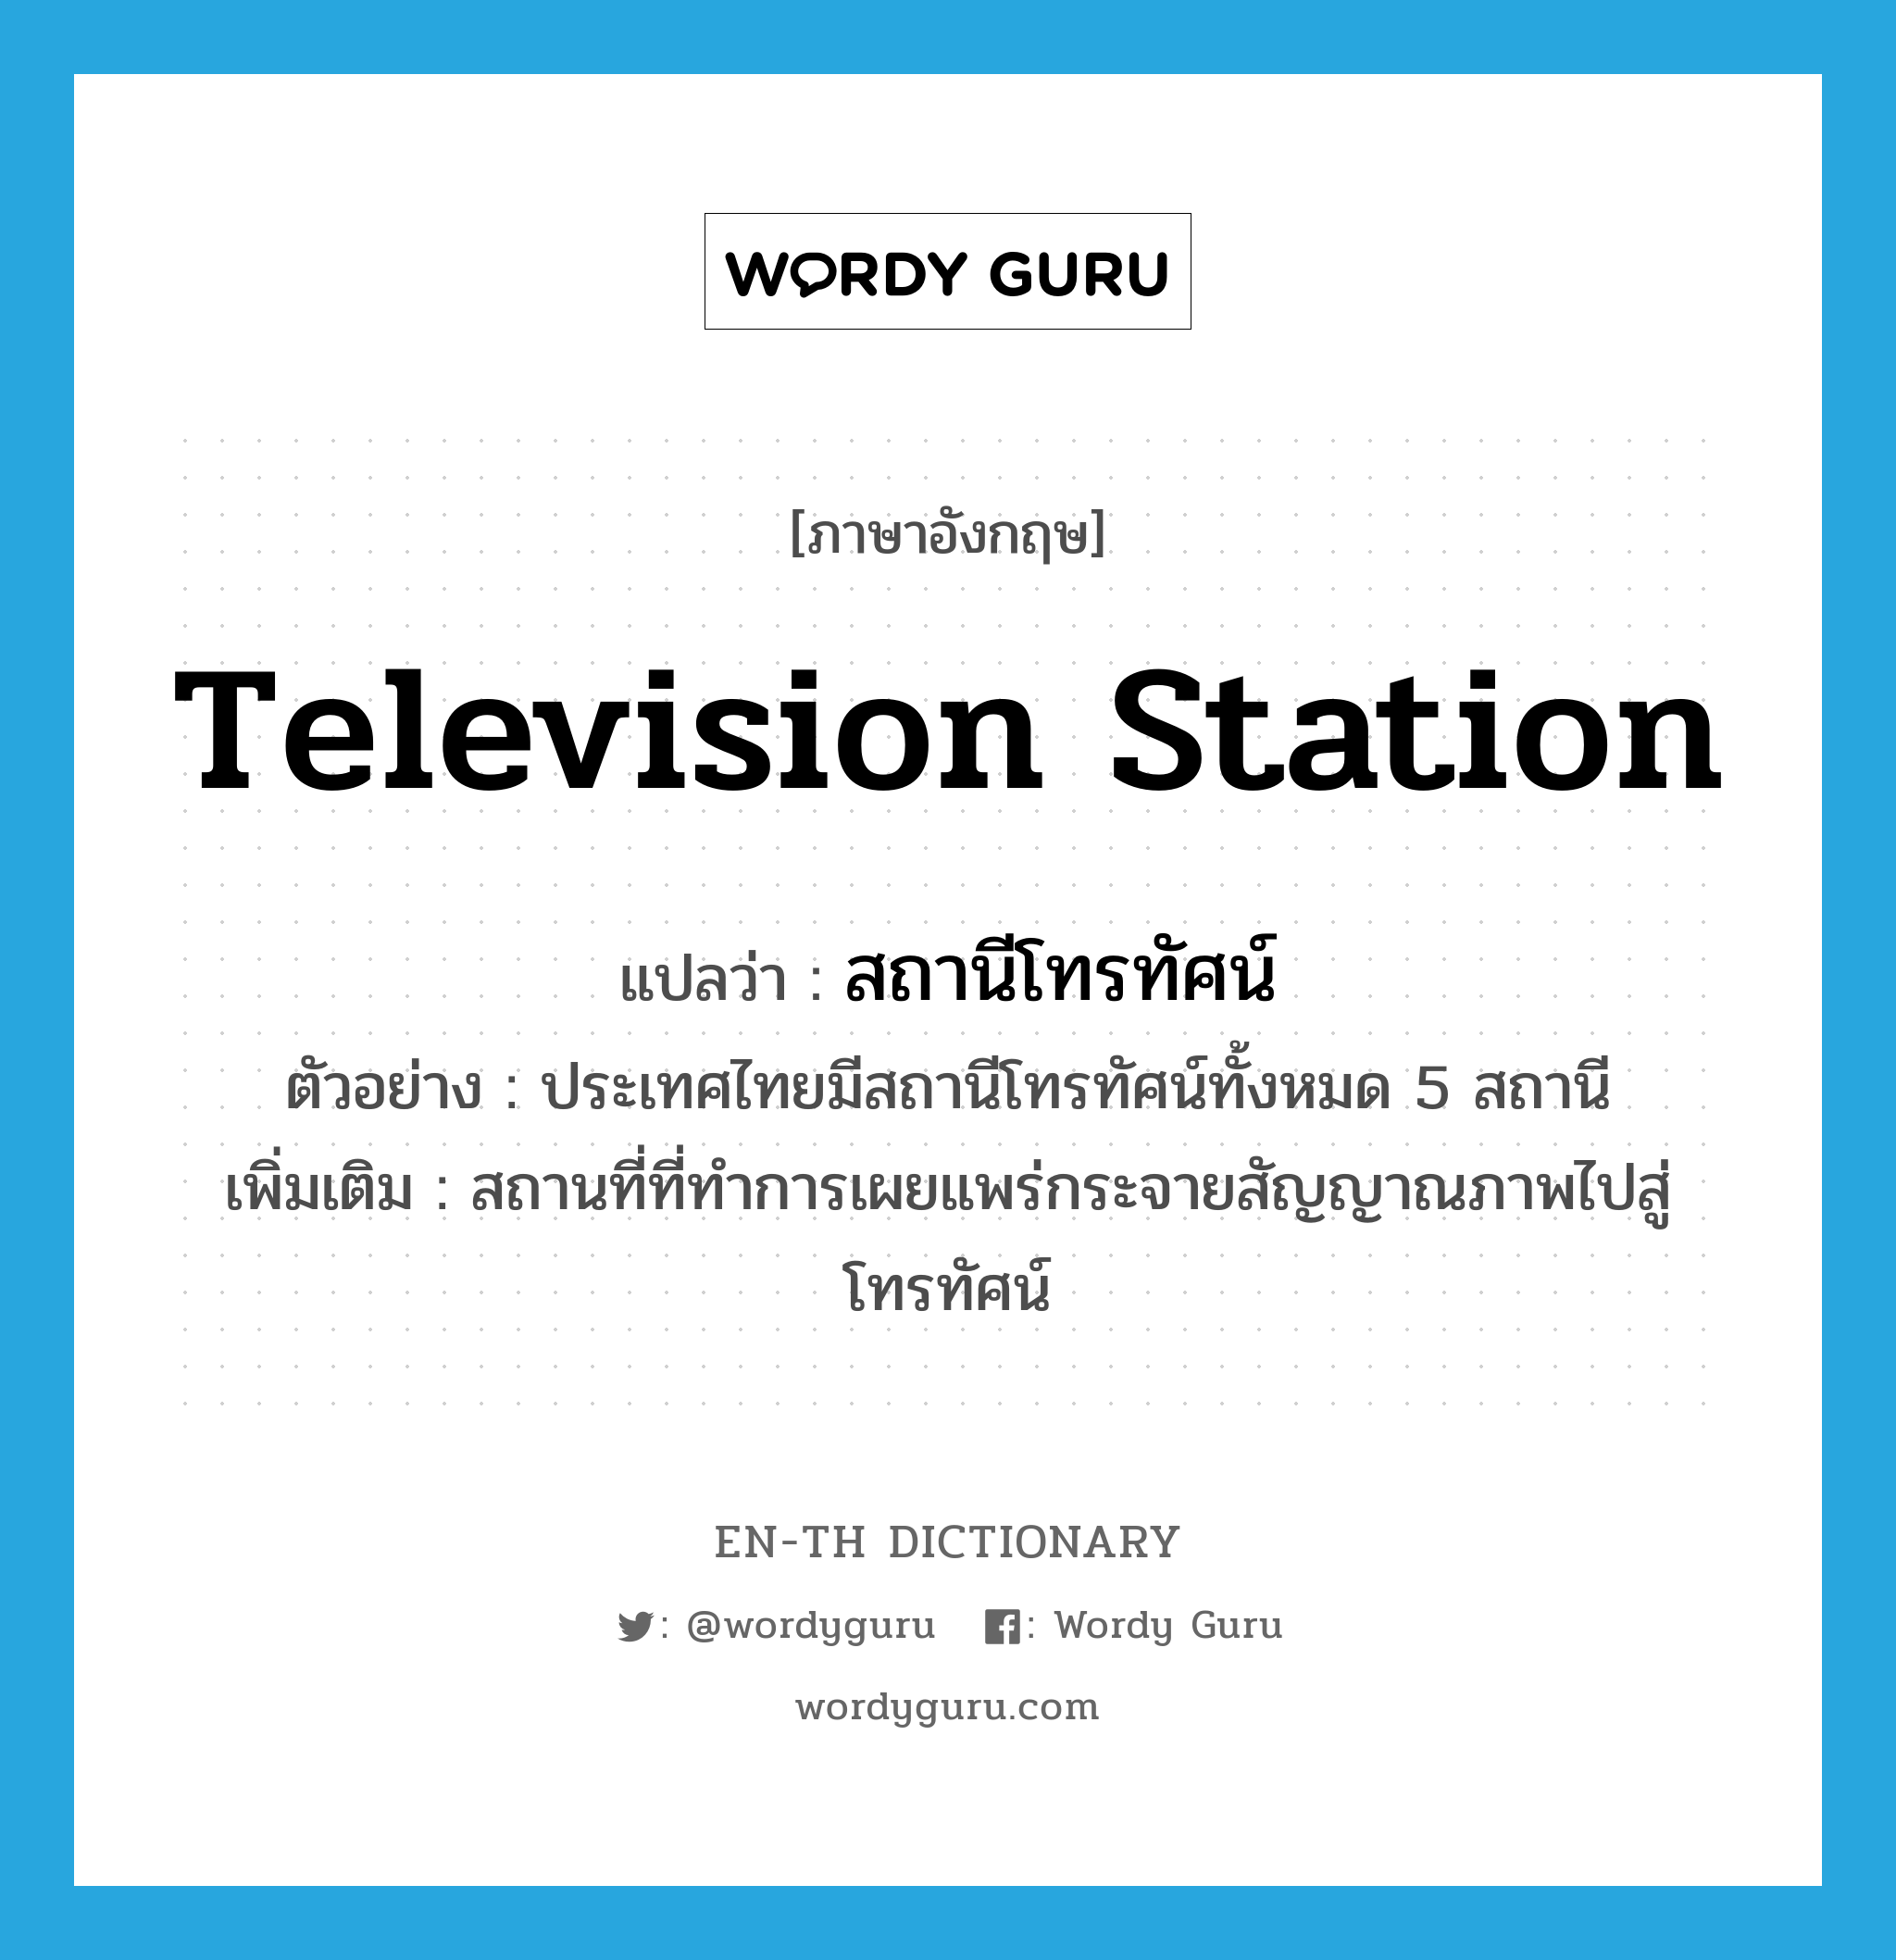 สถานีโทรทัศน์ ภาษาอังกฤษ?, คำศัพท์ภาษาอังกฤษ สถานีโทรทัศน์ แปลว่า television station ประเภท N ตัวอย่าง ประเทศไทยมีสถานีโทรทัศน์ทั้งหมด 5 สถานี เพิ่มเติม สถานที่ที่ทำการเผยแพร่กระจายสัญญาณภาพไปสู่โทรทัศน์ หมวด N